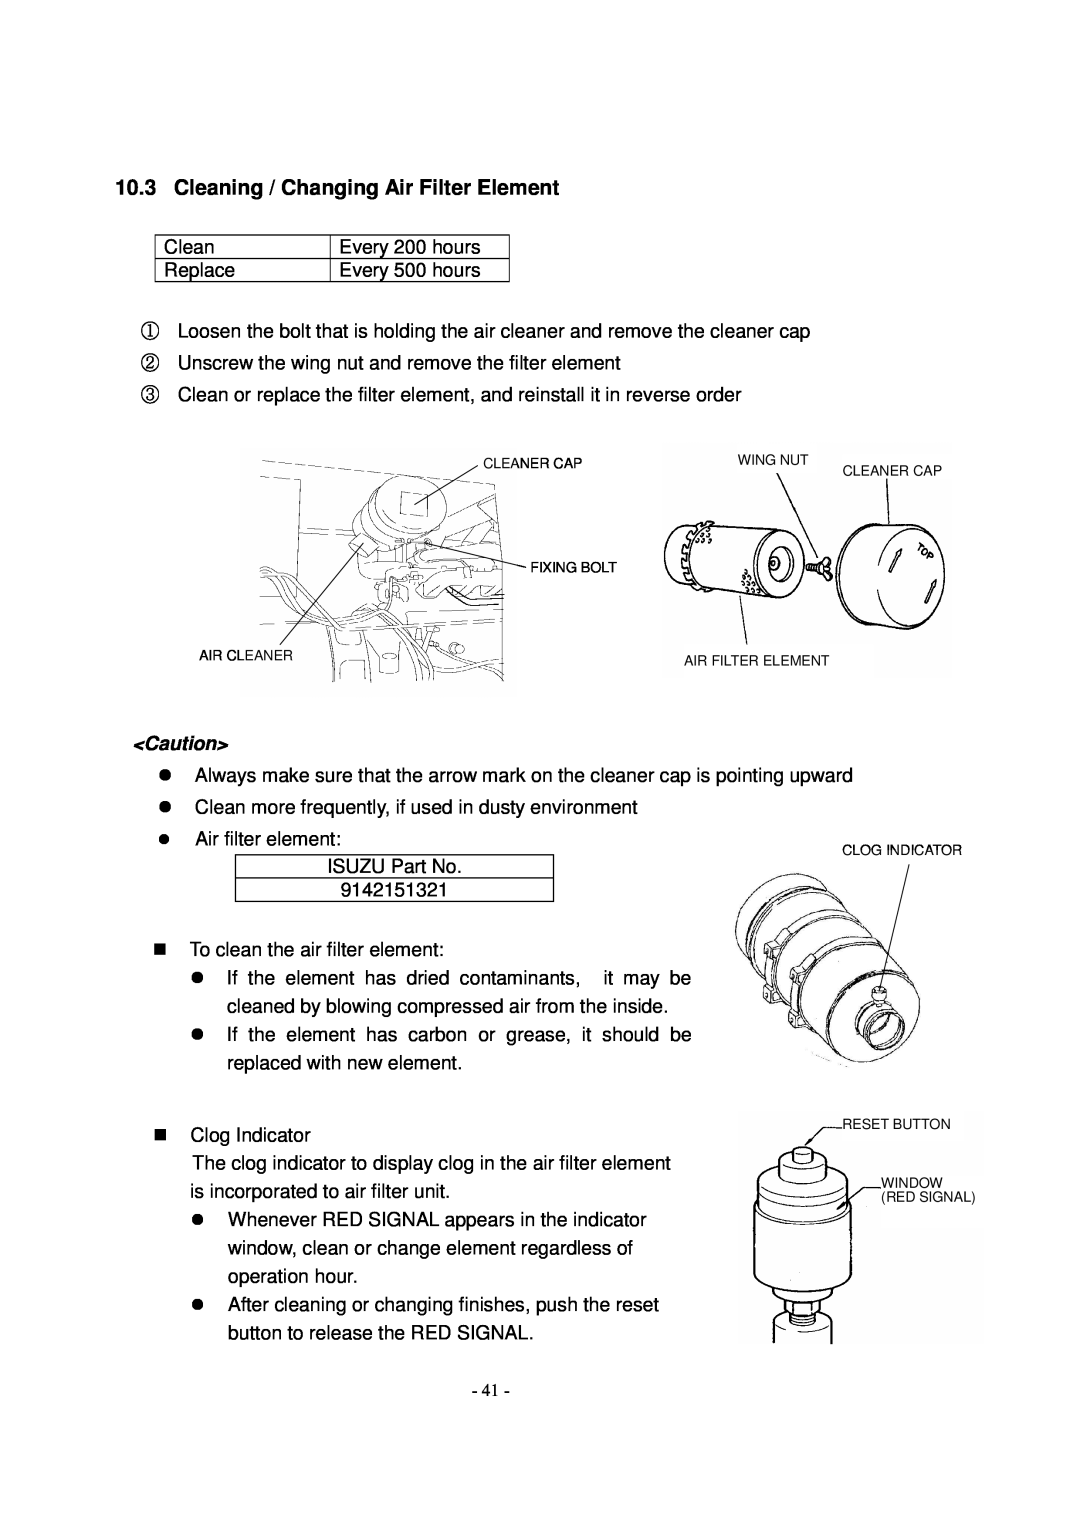 Shindaiwa DG1000MI manual ① ② ③, Cleaning / Changing Air Filter Element 